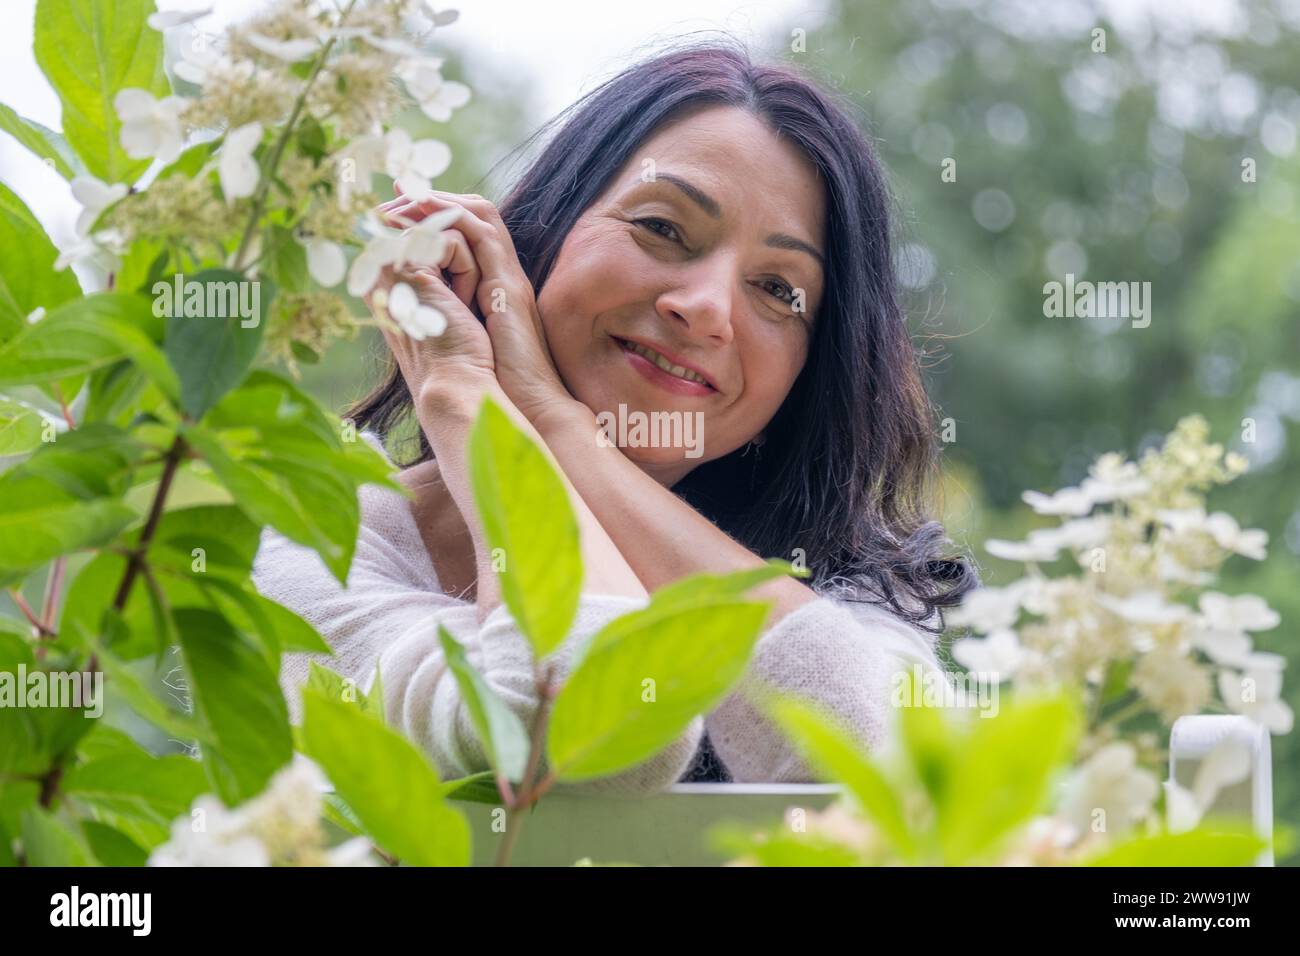 Eine lächelnde Midage-Frau in einem grünen Blumengarten drückt Glück und Freude über hormonelle Veränderungen und Kämpfe aus. Hochwertige Fotos Stockfoto